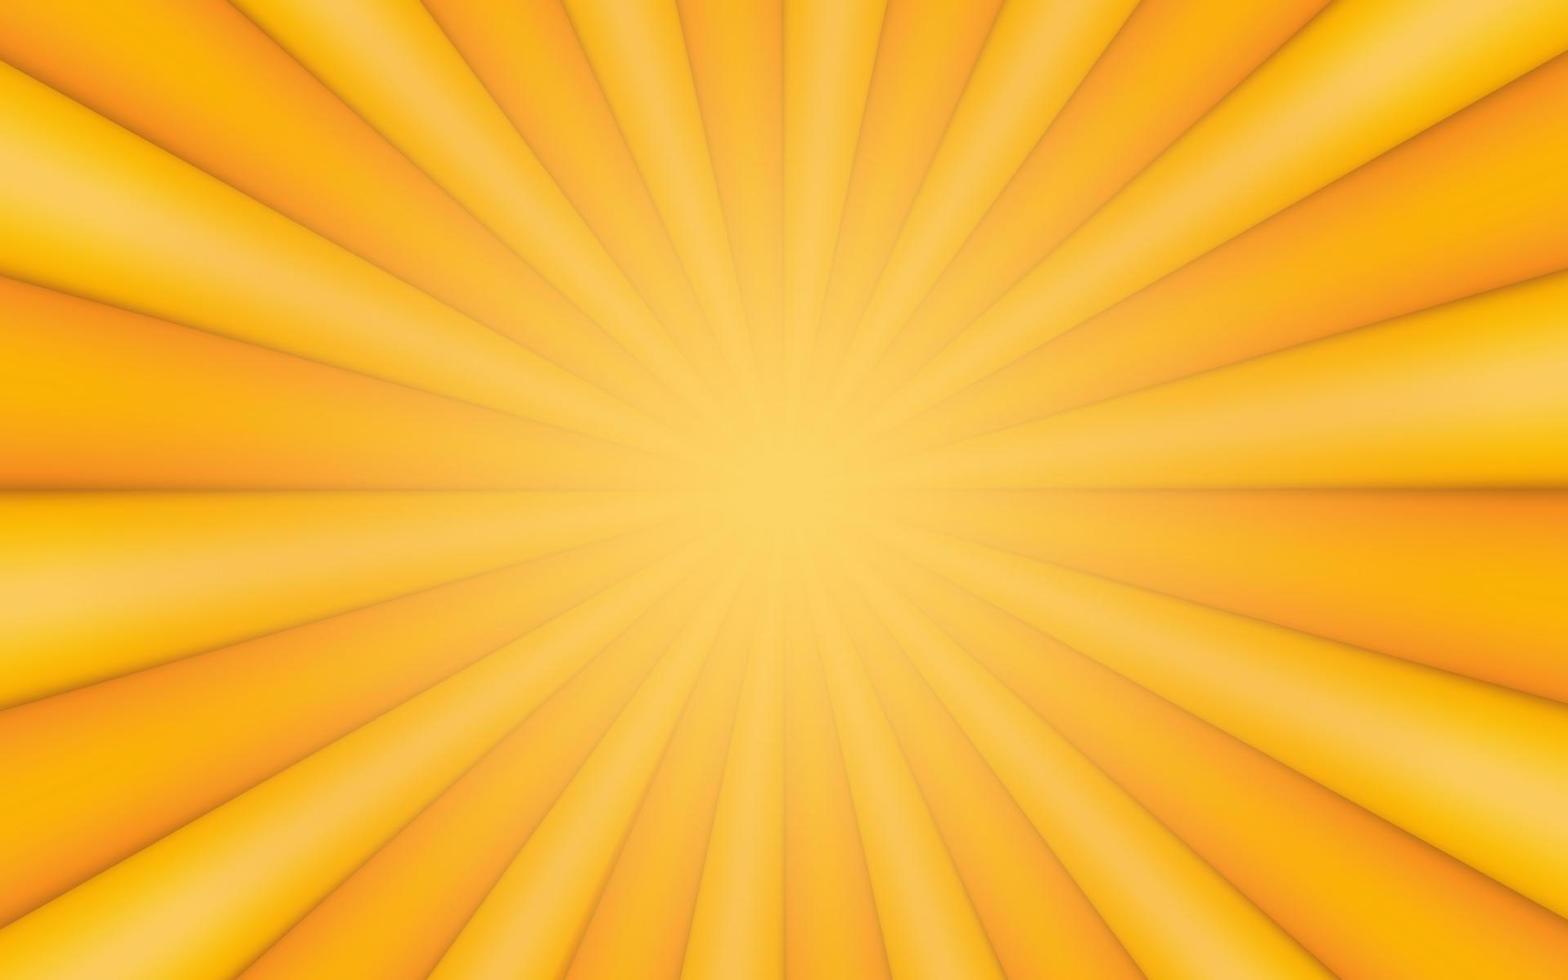 rayos de sol estilo vintage retro sobre fondo amarillo, patrón cómico con fondo 3d de rayos de sol. rayos ilustración de vector de banner de verano